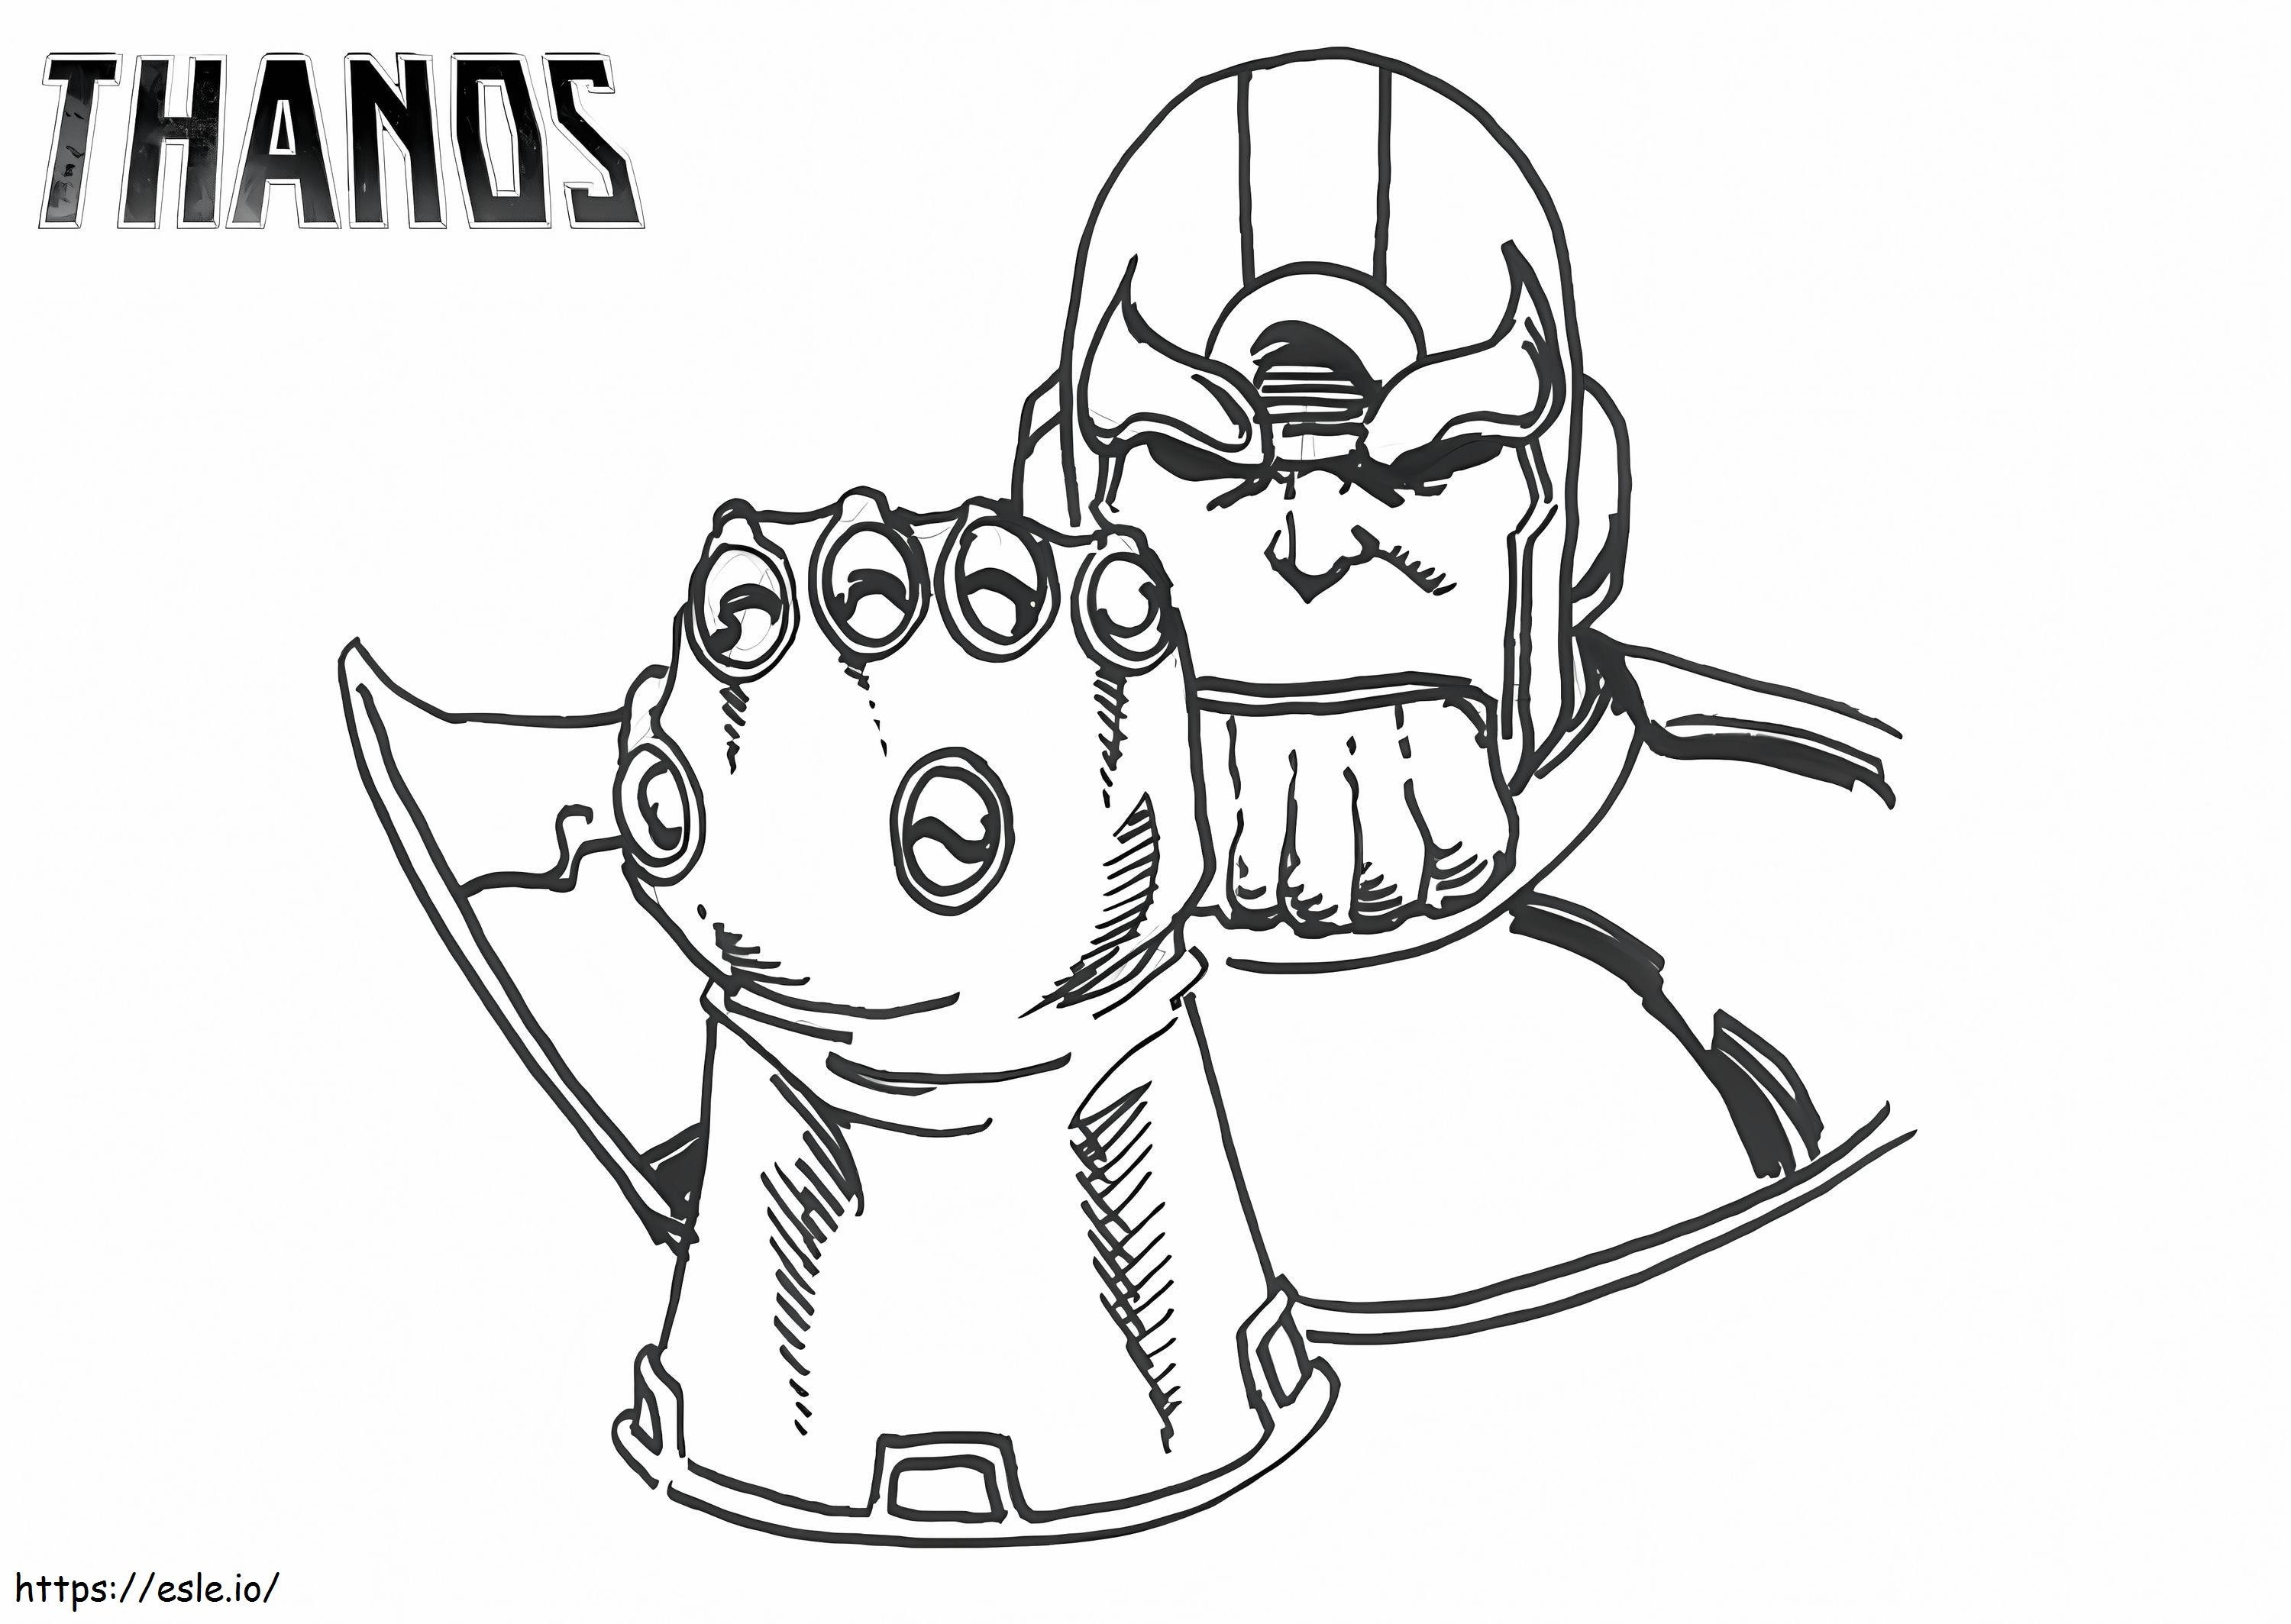 Podstawowy Thanos z Rękawicą Nieskończoności kolorowanka